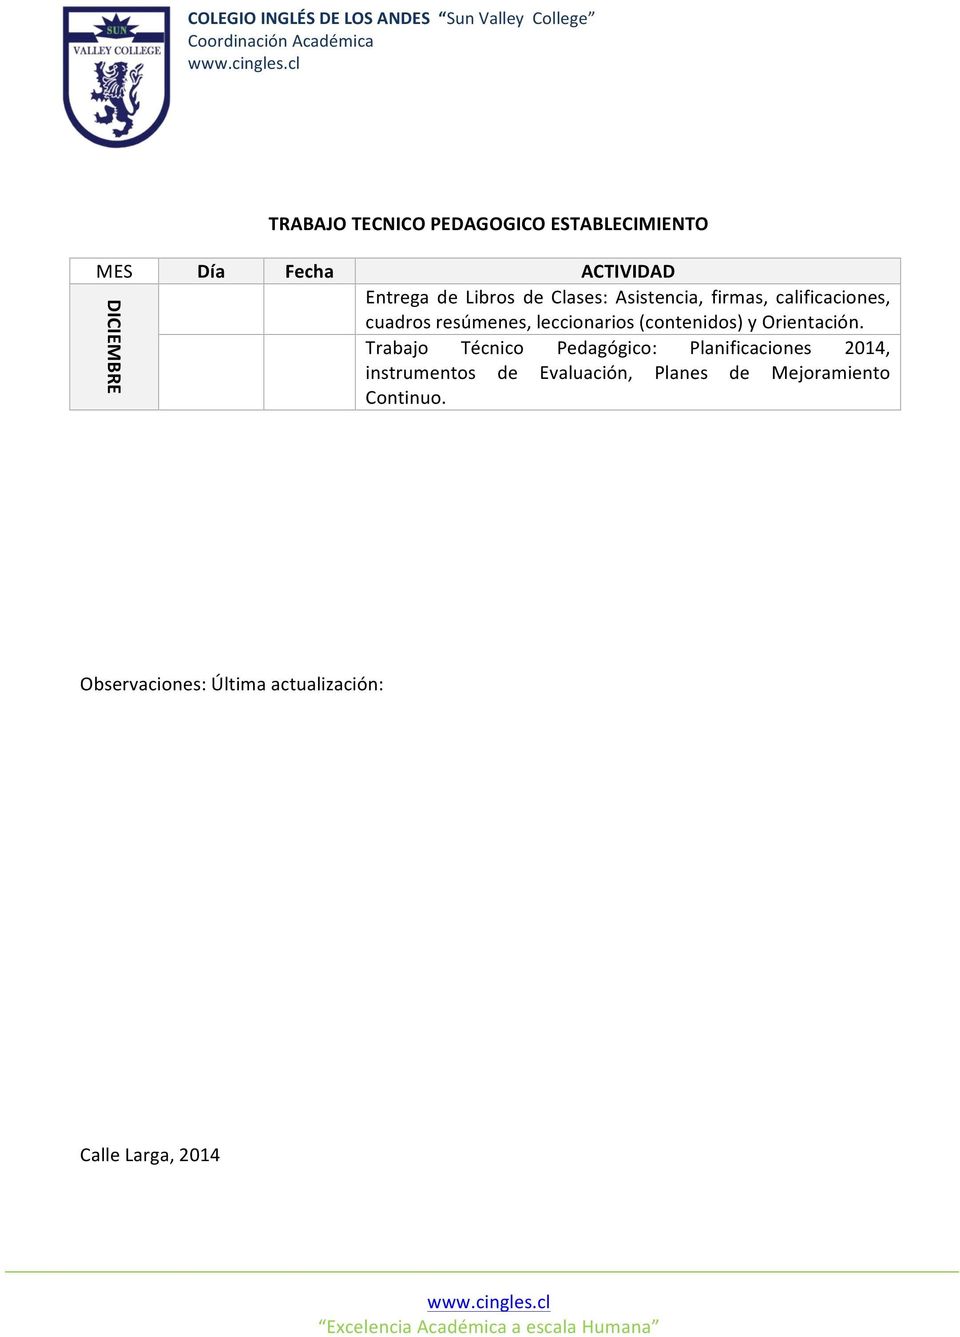 Trabajo Técnico Pedagógico: Planificaciones 2014, instrumentos de Evaluación, Planes